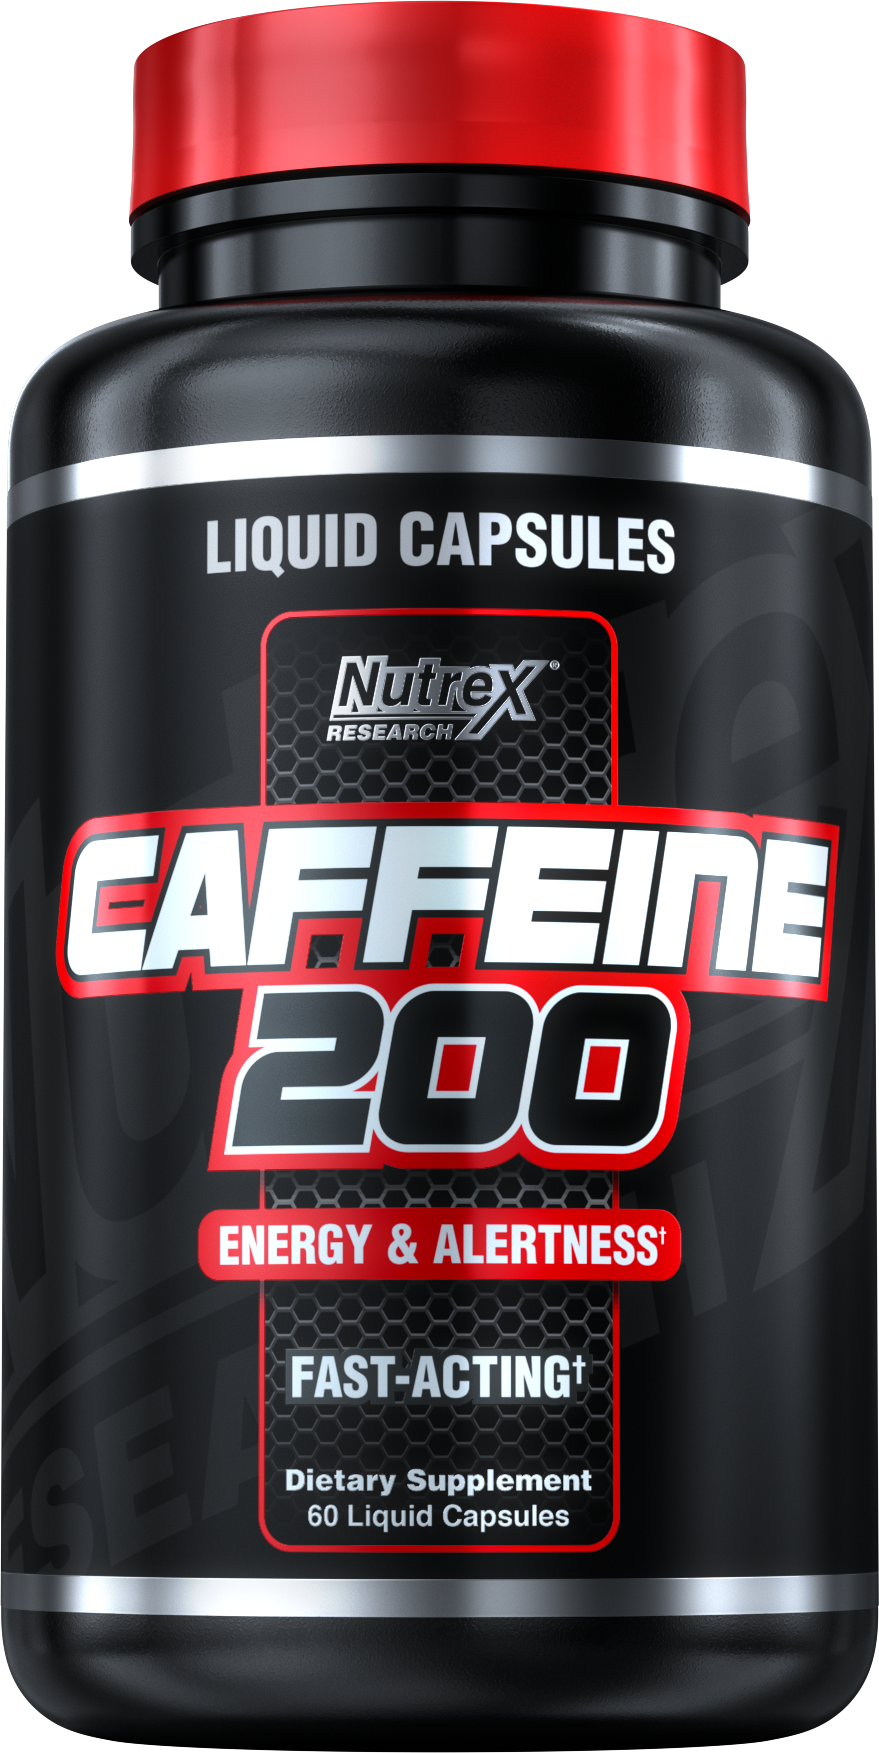 Спортпит Caffeine 200. Nutrex Caffeine 200 (60 кап). Кофеин спортпит. Кофеин в таблетках спортивное питание. Кофеин в капсулах